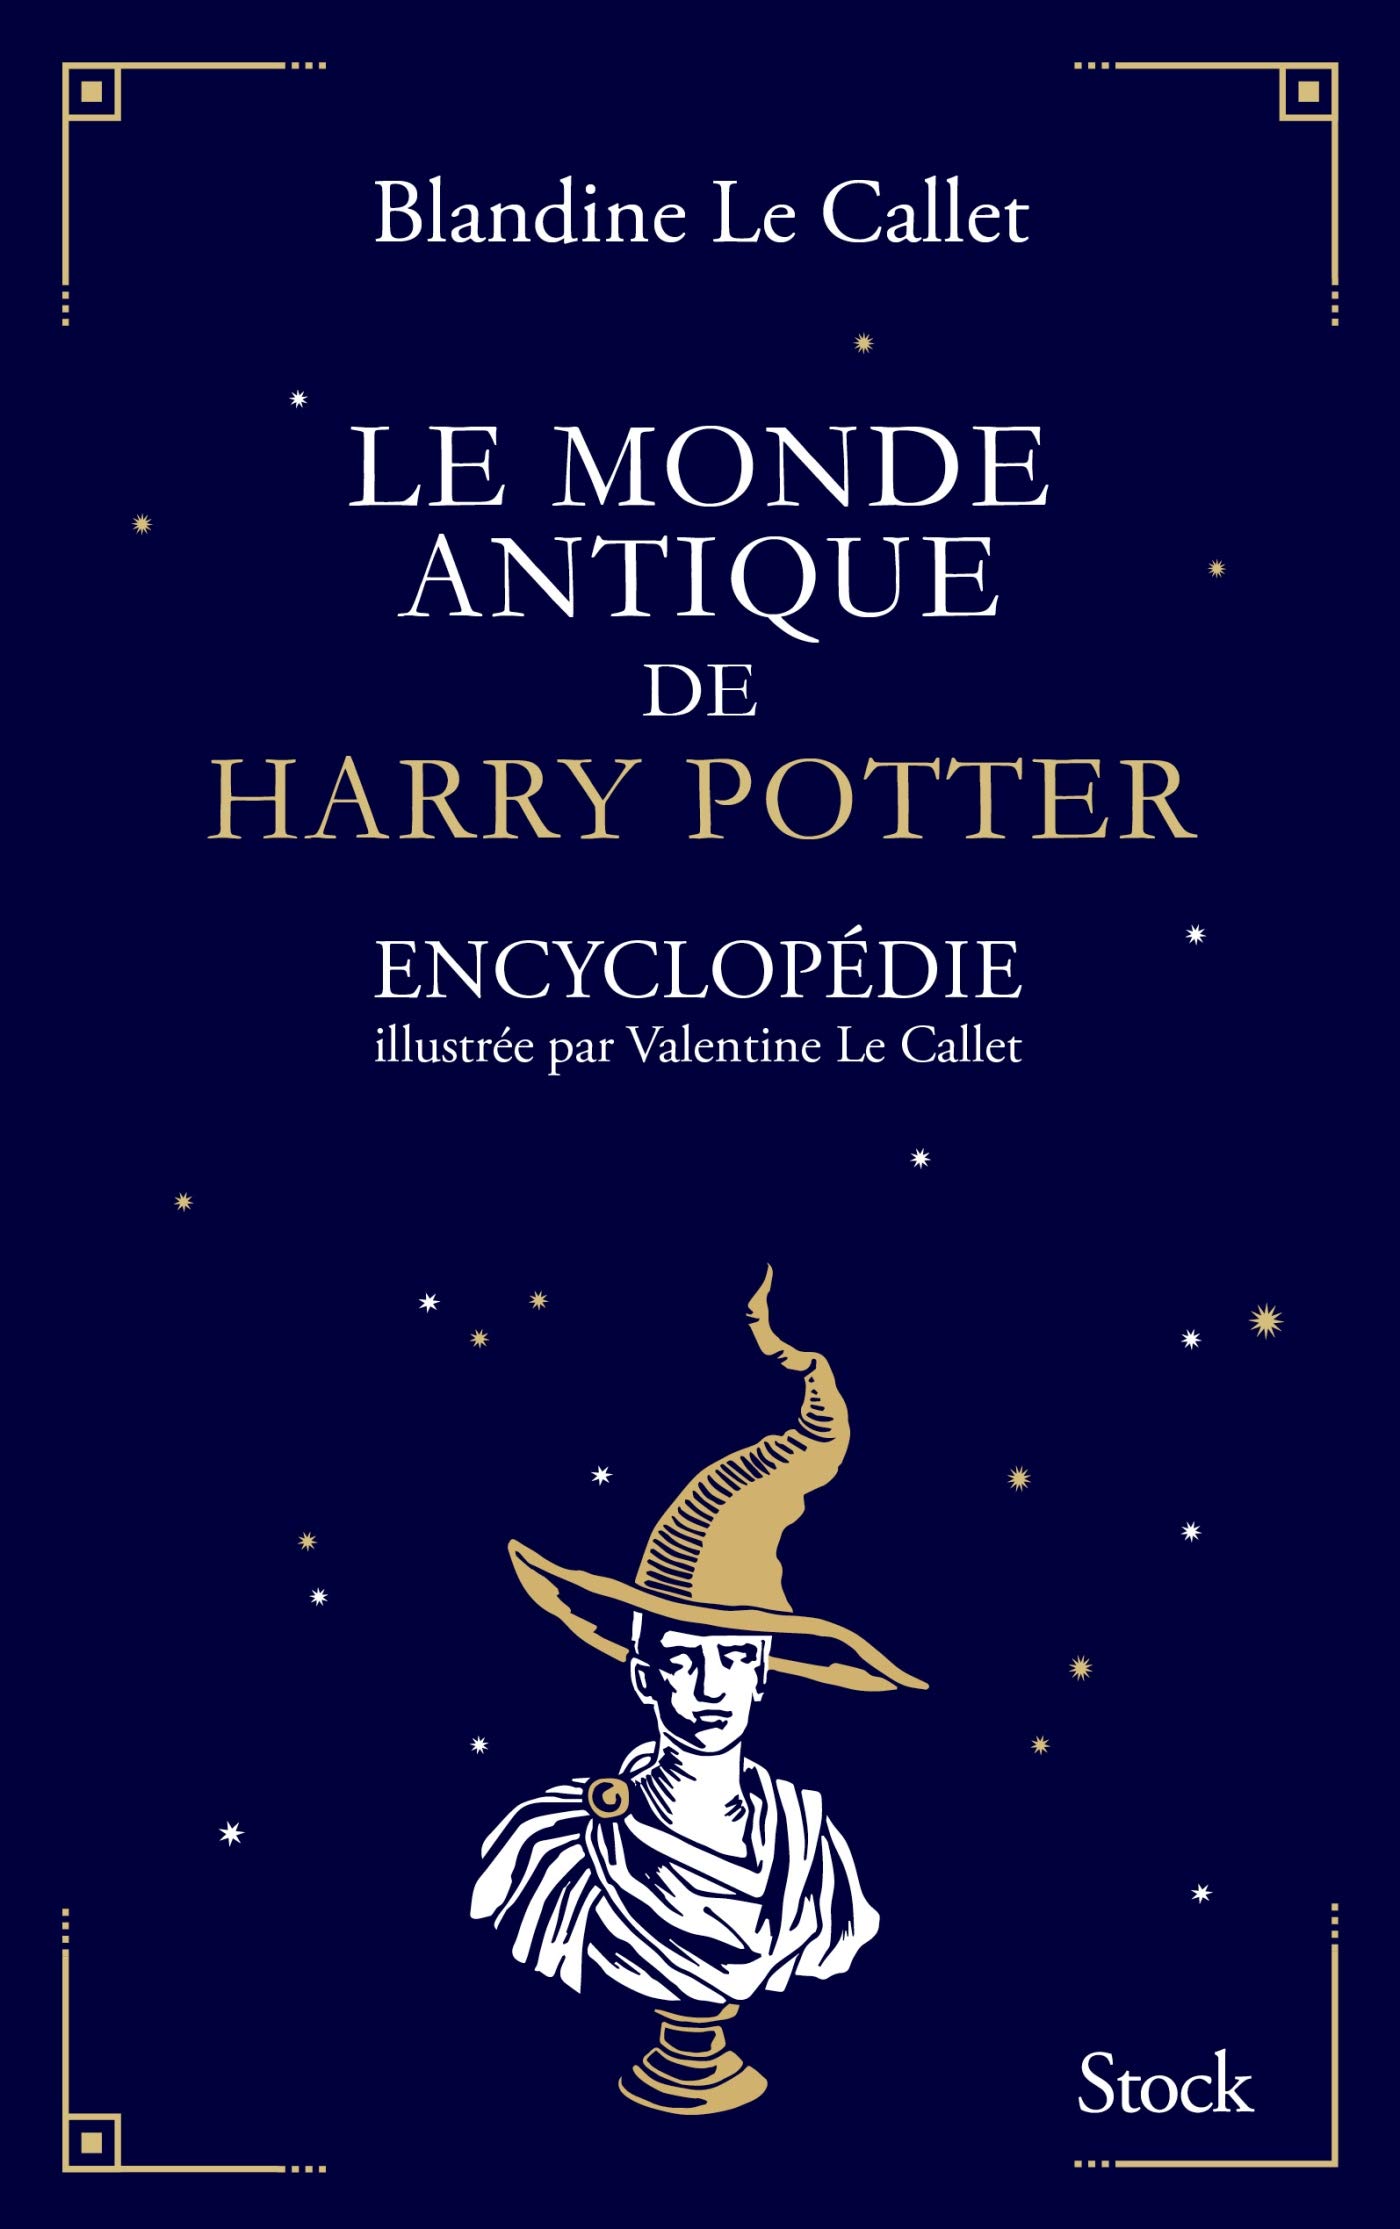 Le monde antique de Harry Potter. Encyclopédie illustrée par Valentine Le Callet, 2018, 544 p.